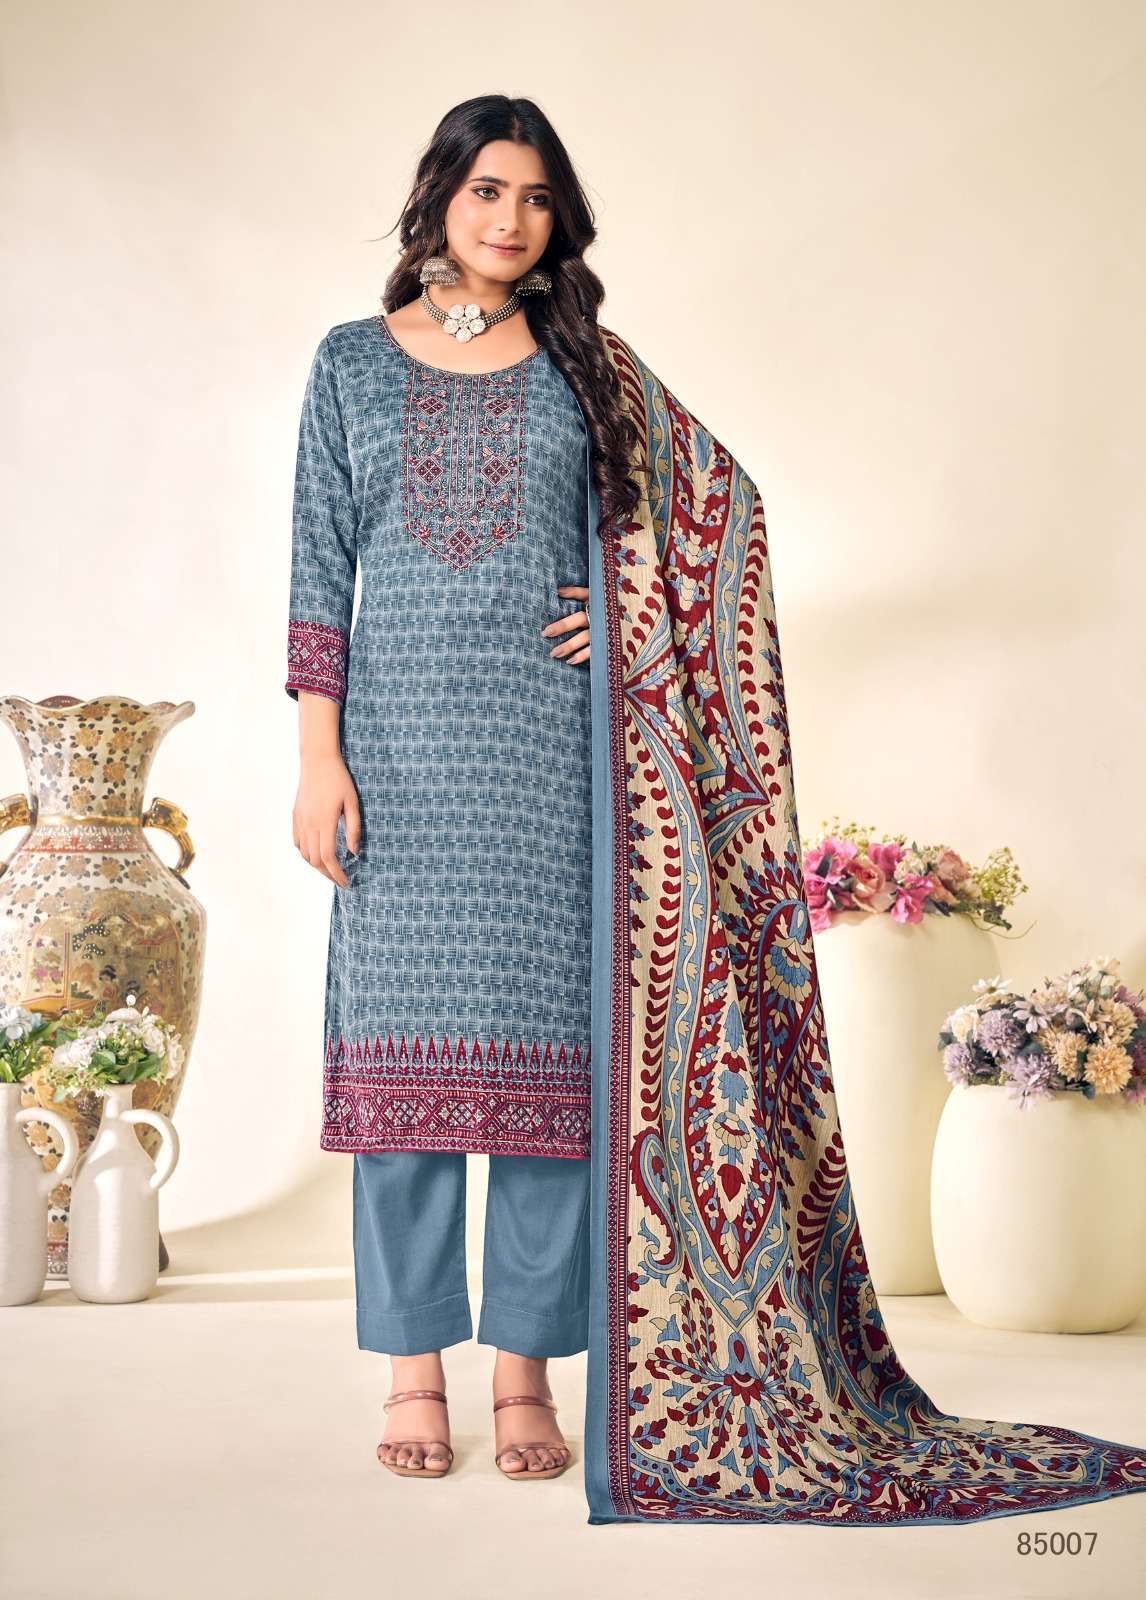 skt suits alison 85001-85008 series latest festive wear designer salwar kameez wholesaler surat gujarat